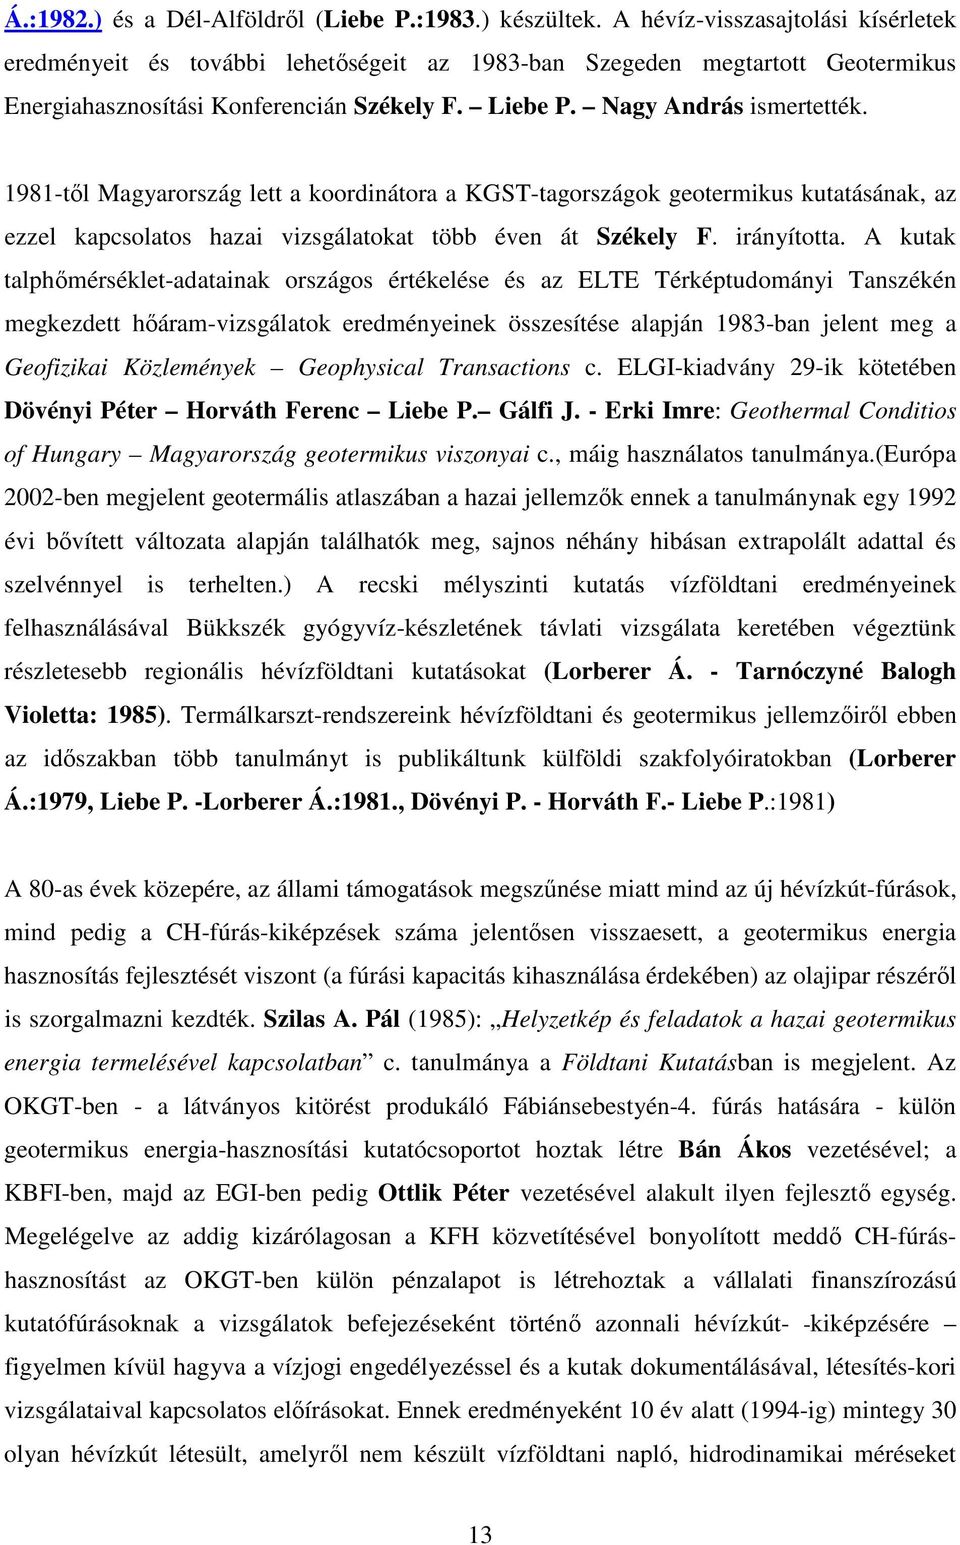 1981-tl Magyarország lett a koordinátora a KGST-tagországok geotermikus kutatásának, az ezzel kapcsolatos hazai vizsgálatokat több éven át Székely F. irányította.